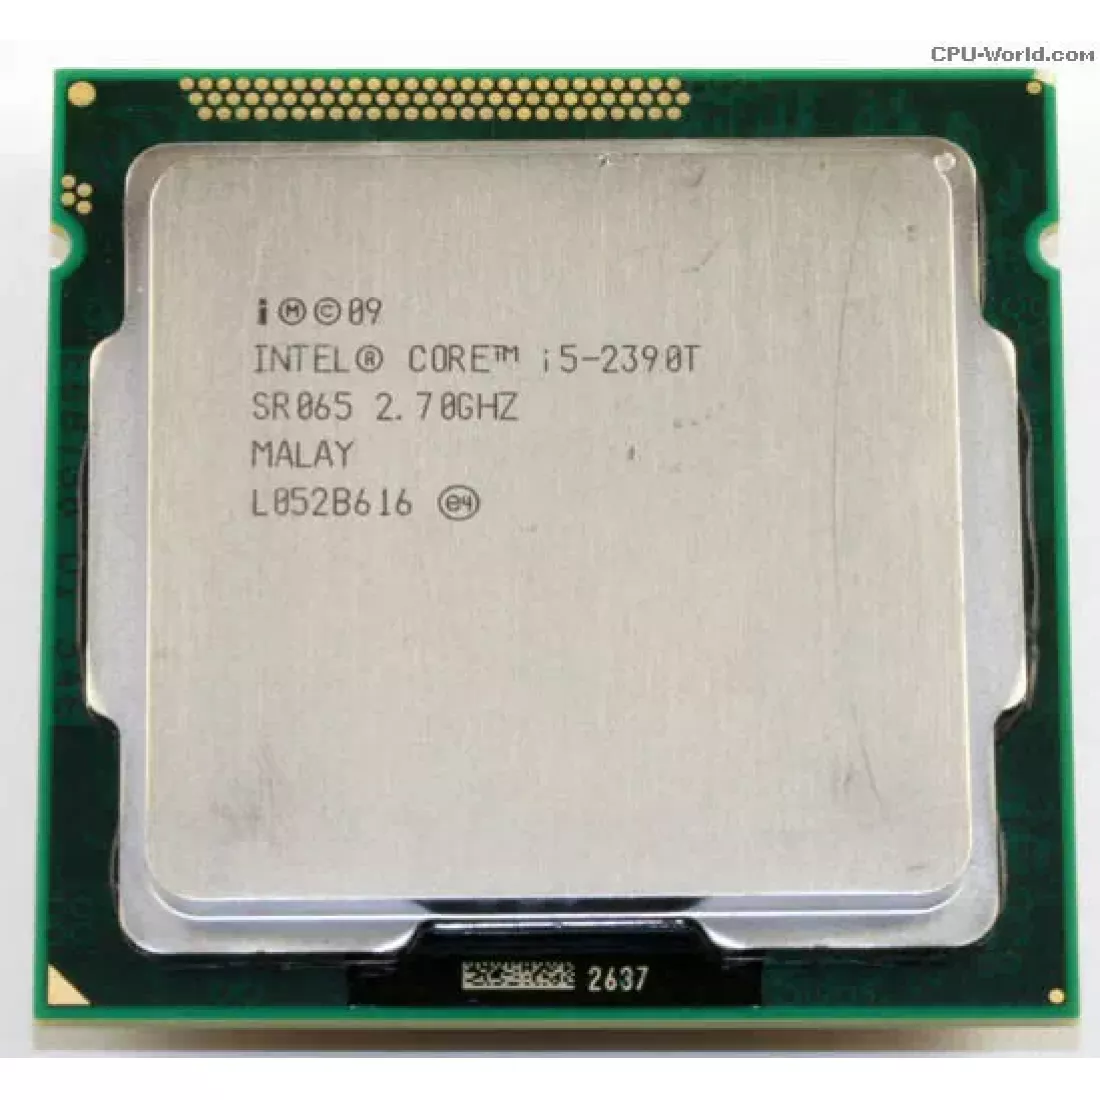 Интел i7 3770. Intel Pentium g2030. Процессор Intel Core i5 2400. Процессор Intel Core i7 3770k. Intel i5-3570 CPU 3.40 GHZ.